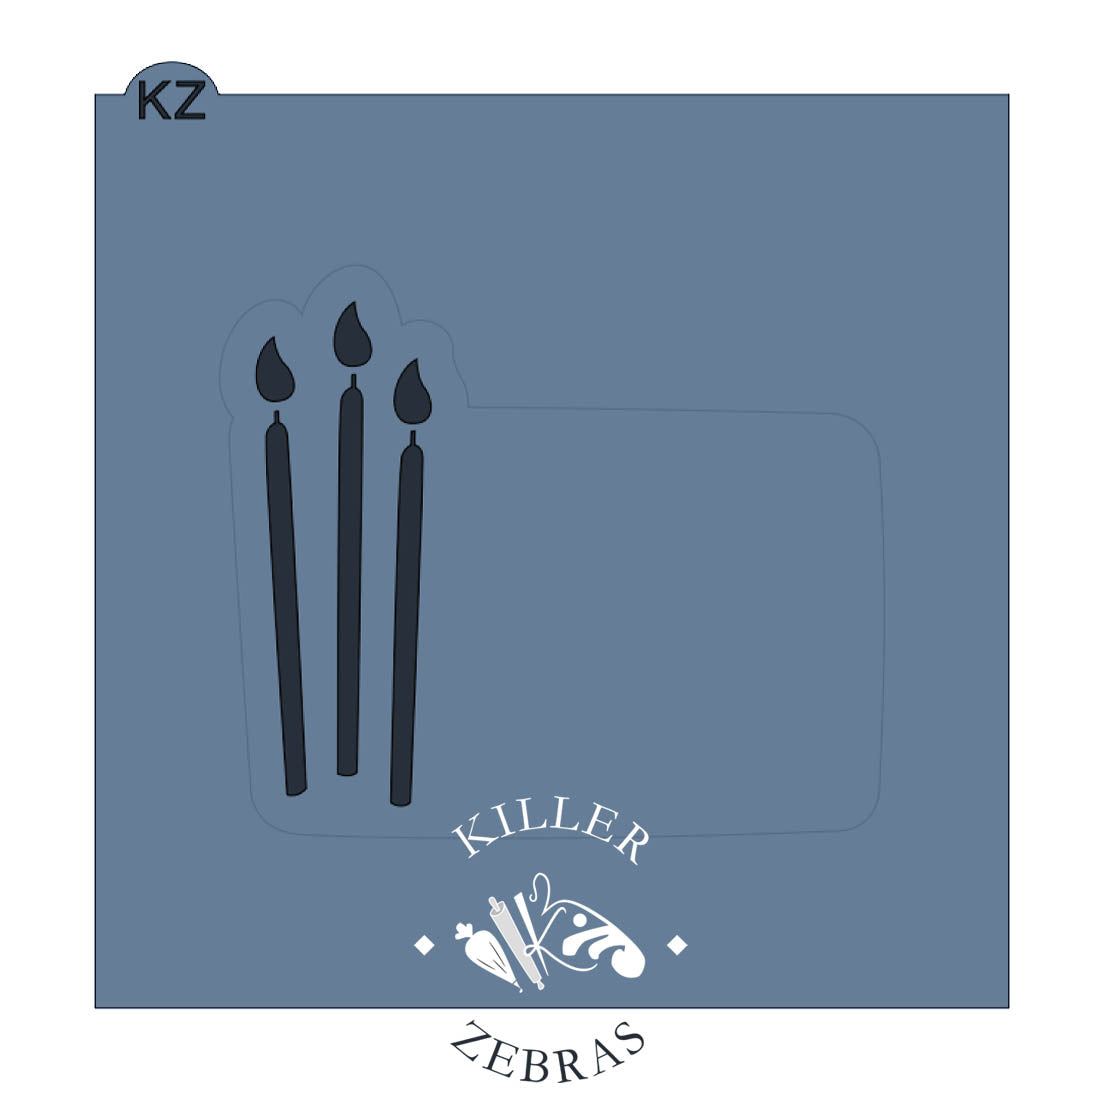 Happy Birthday Candle 5in Cutter Stencil – sheyb